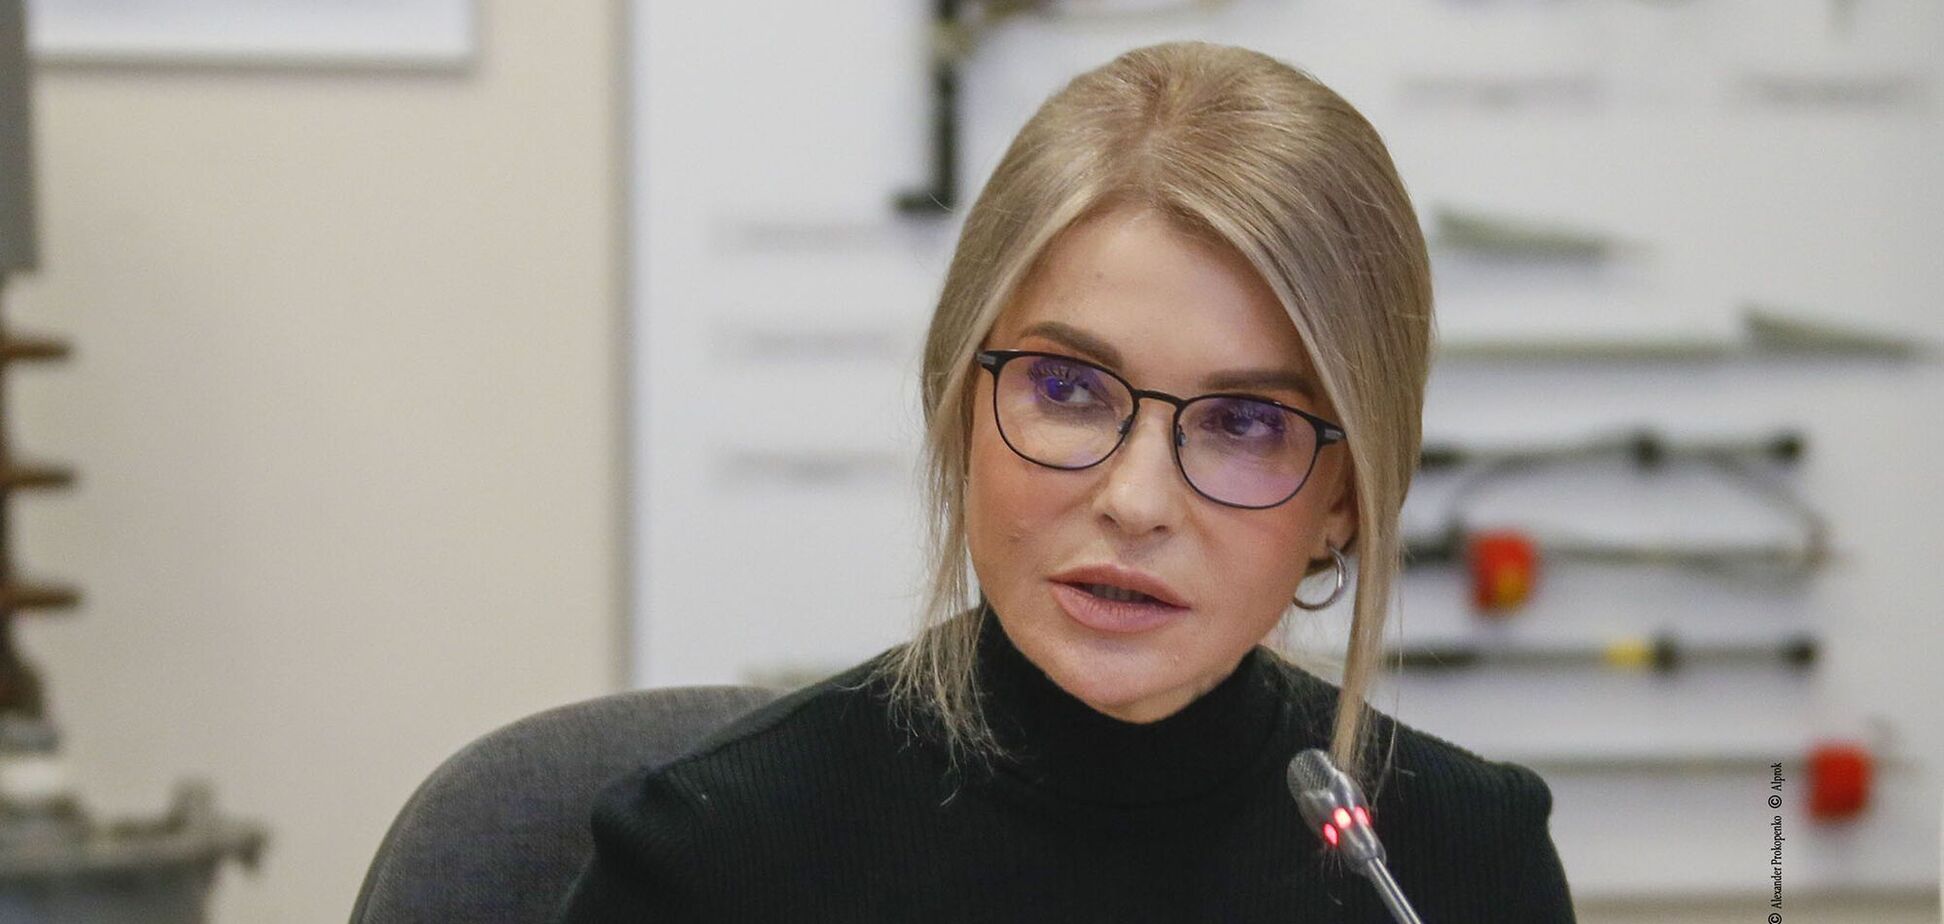 Юлія Тимошенко заявила, що українського газу вистачить для проходження опалювального сезону, і навела цифри